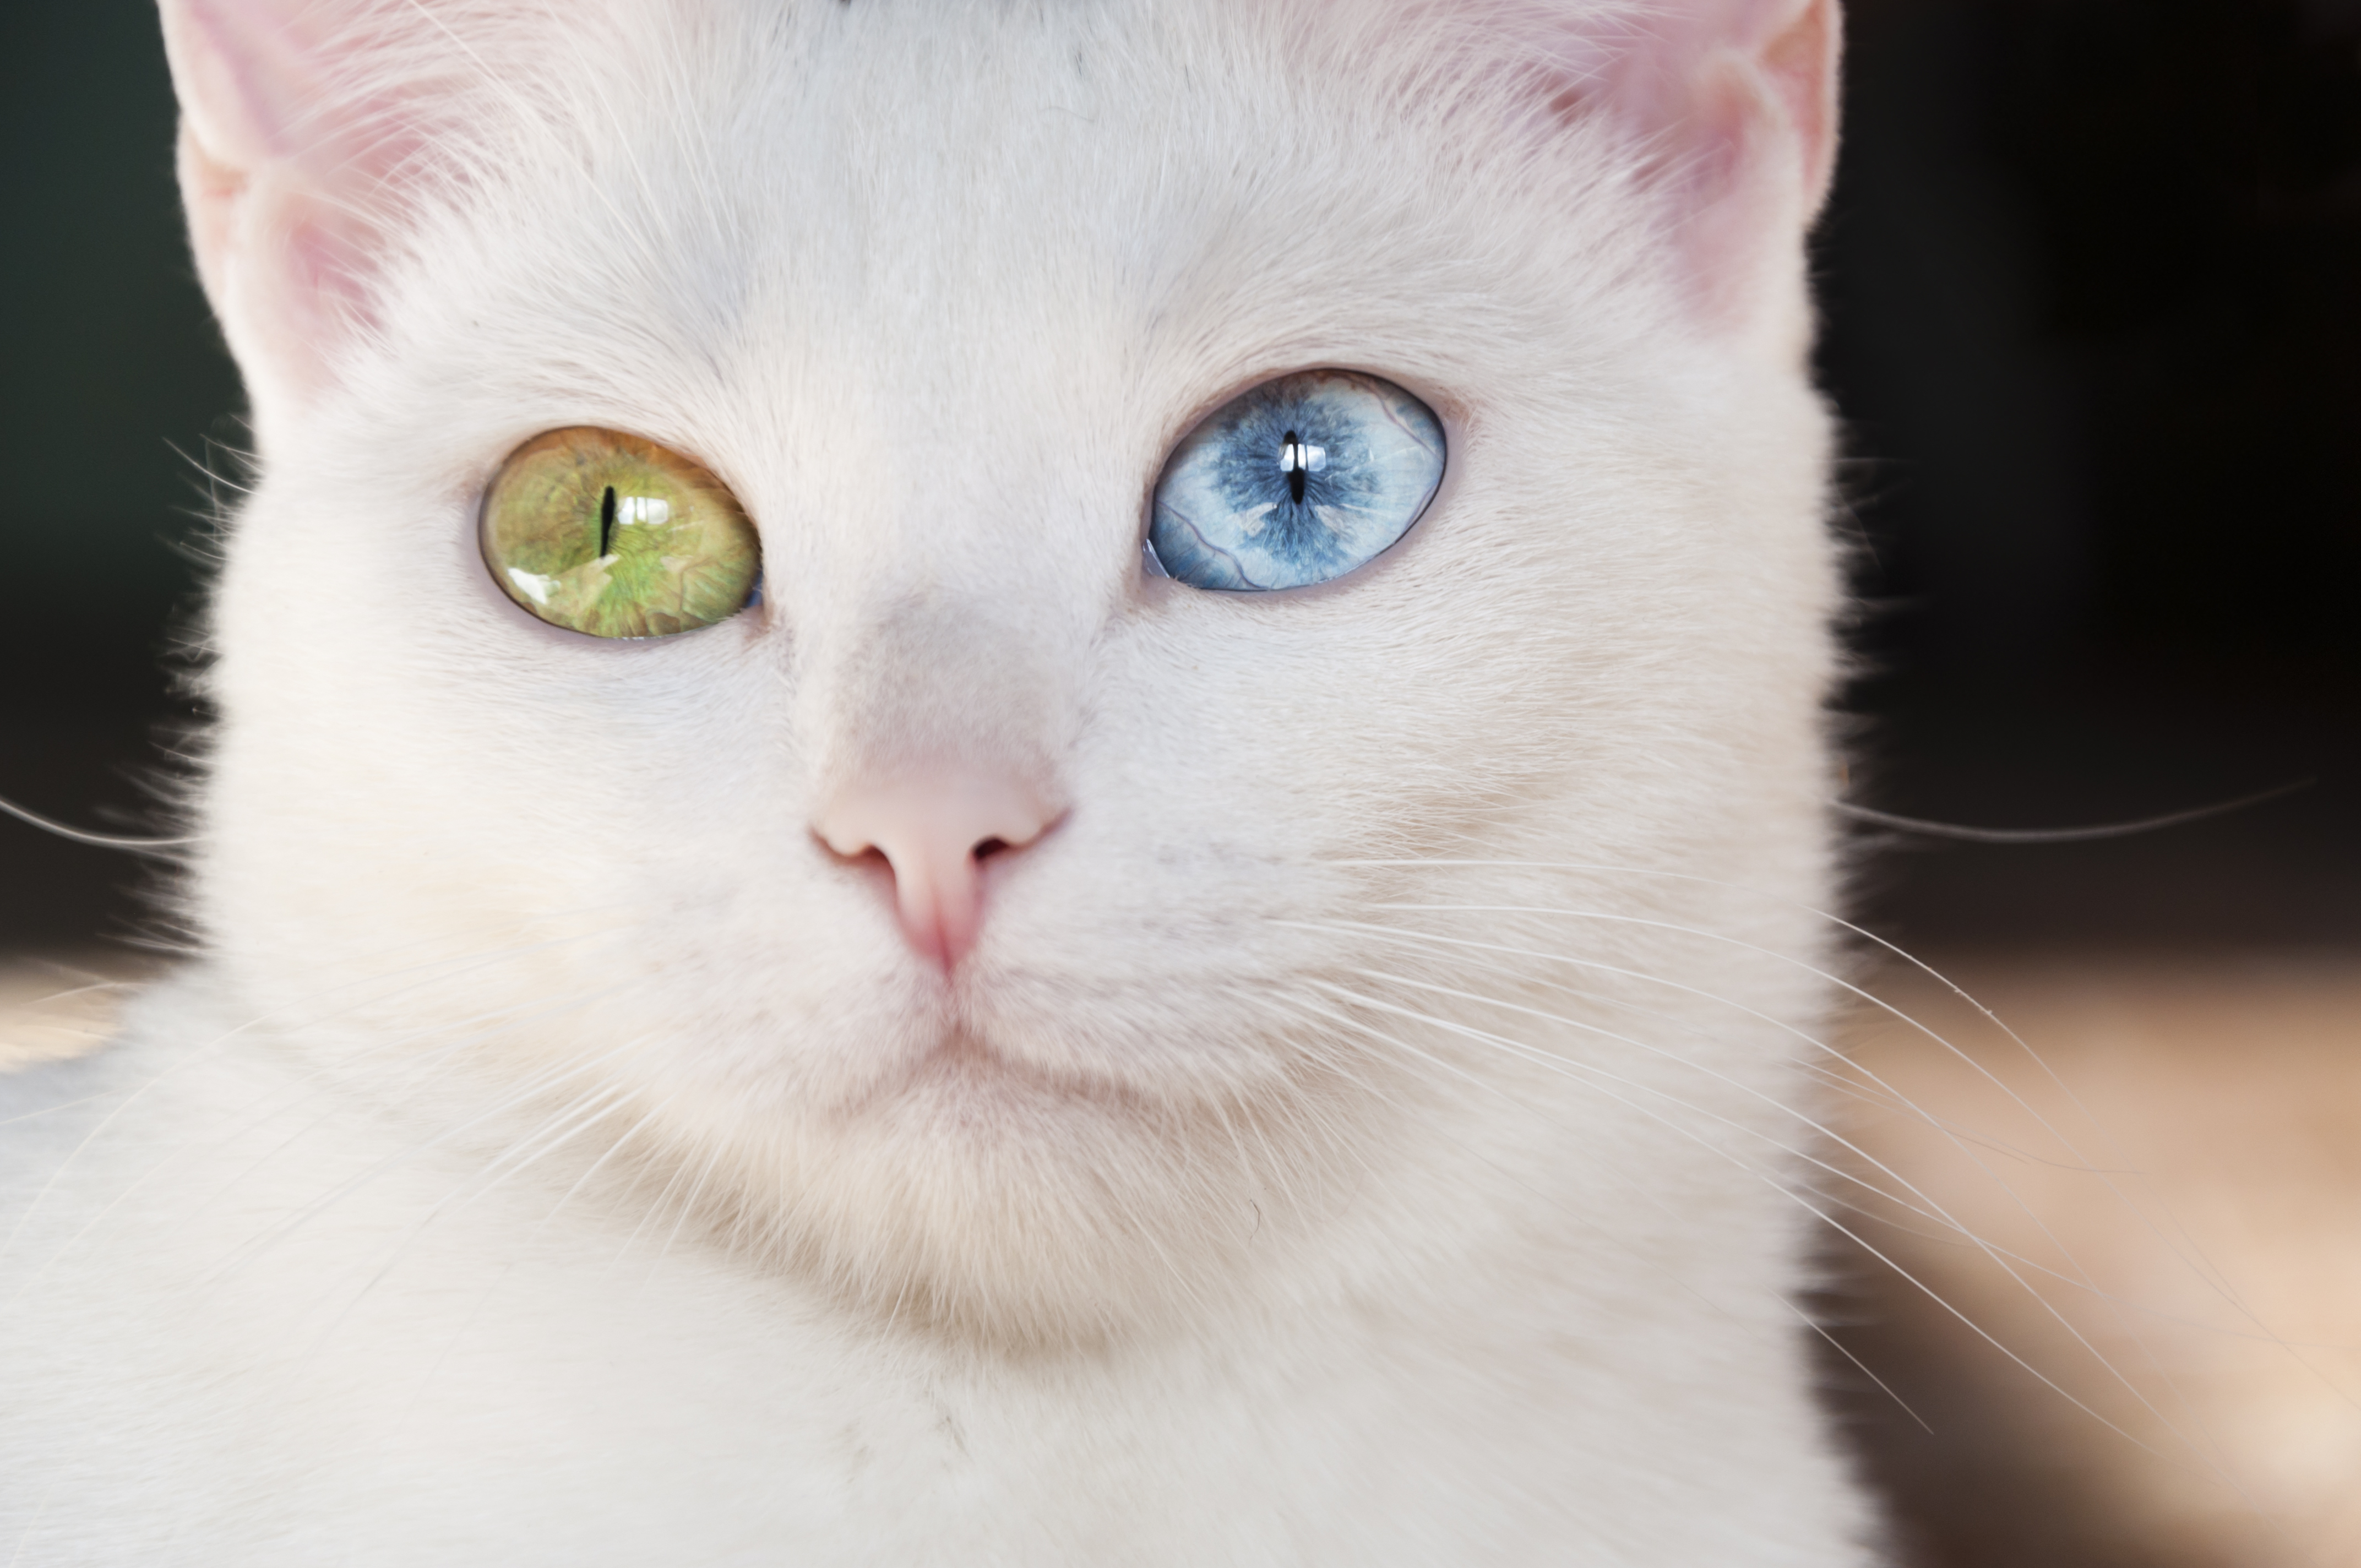 Cat with heterochromia